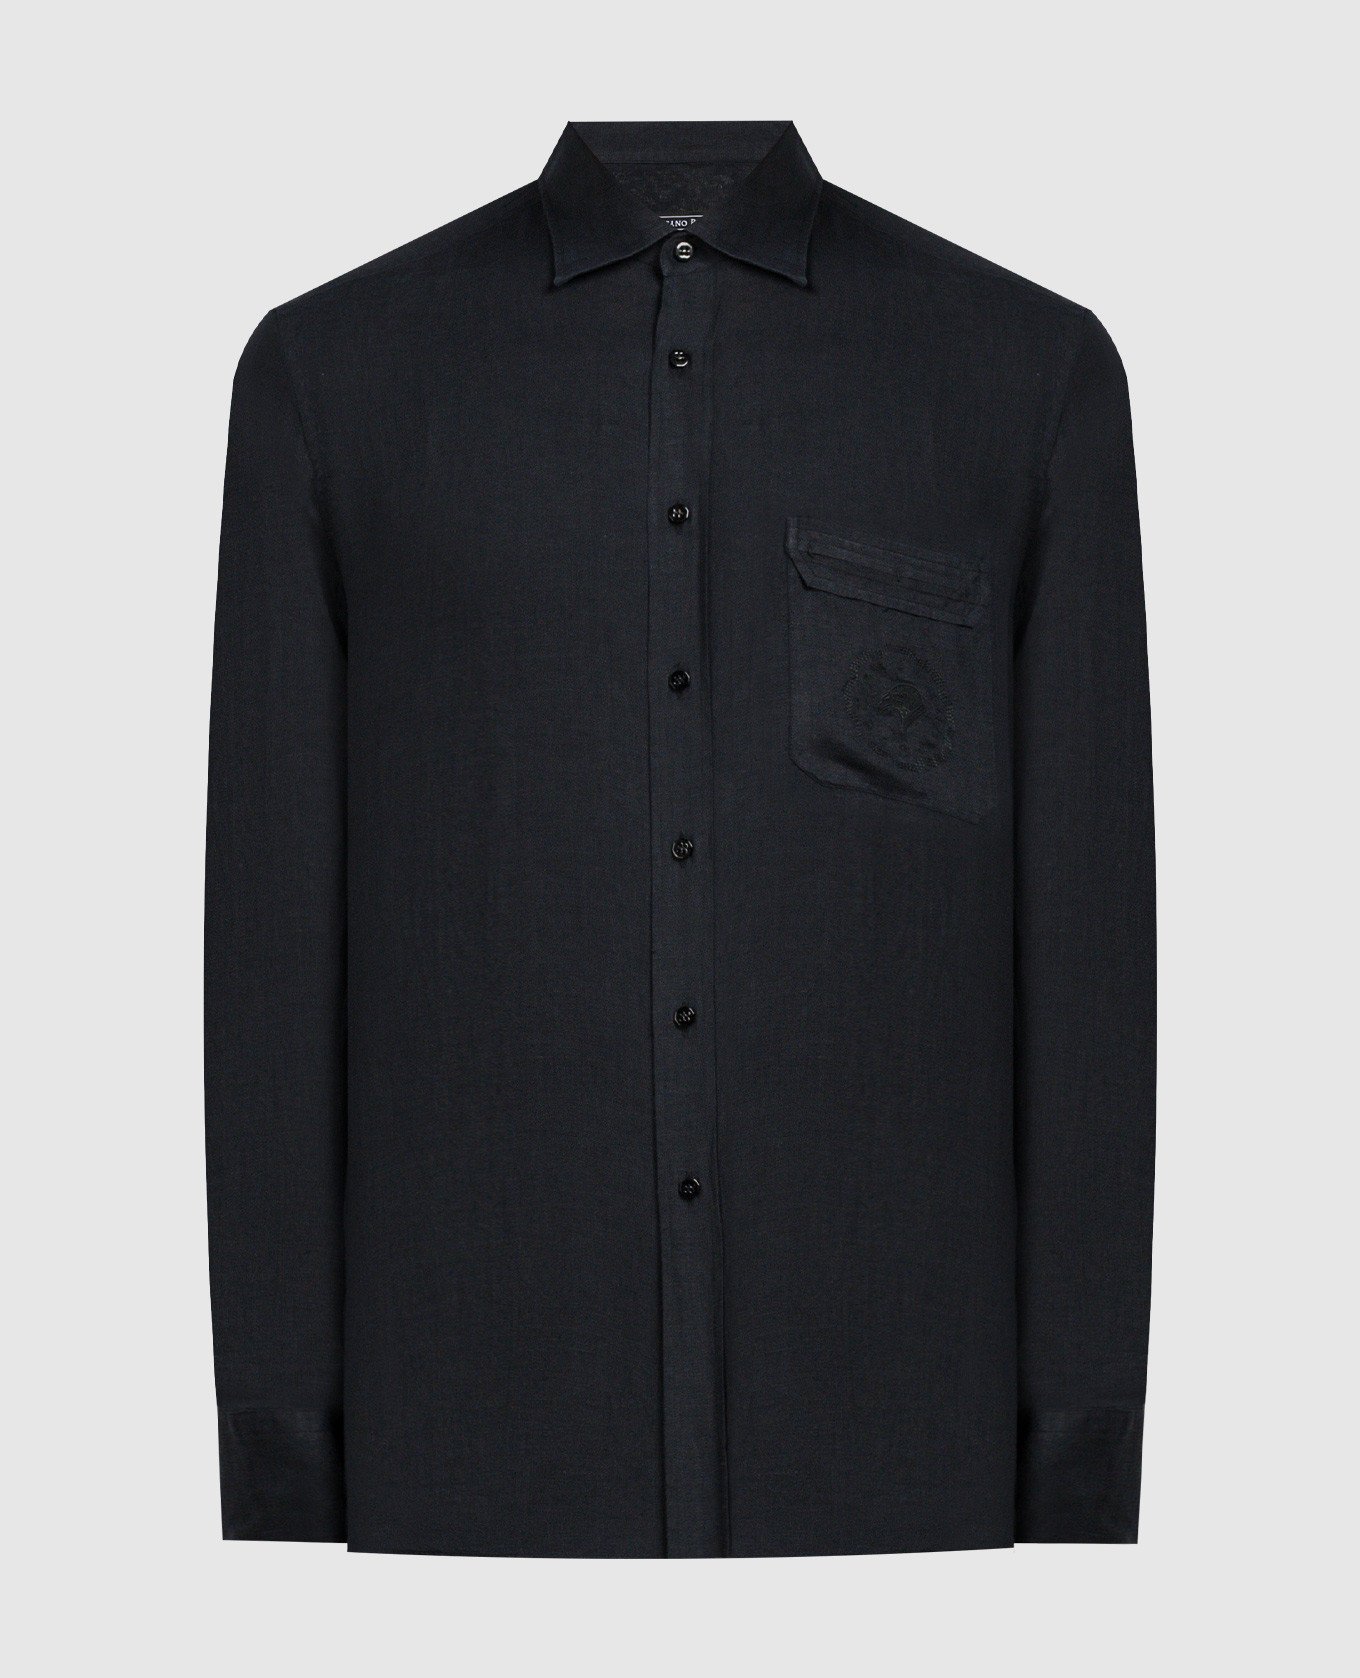 Черная рубашка из льна с вышивкой логотипа